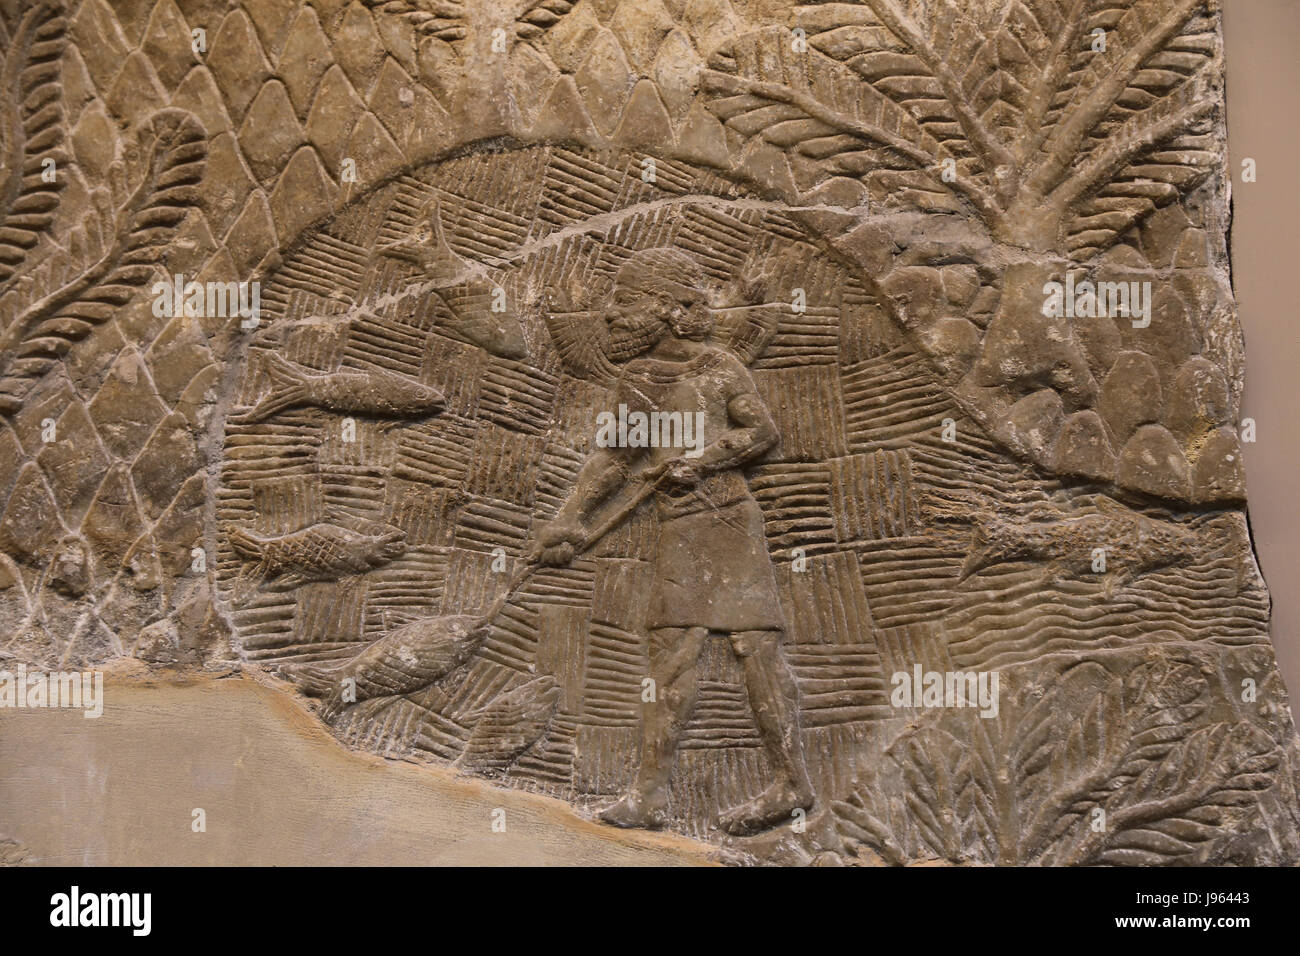 Fisherman. Assyrian, 700-692 BC. Nineveh, South-West Palace. Iraq. Palace, Iraq. British Museum. London. Stock Photo